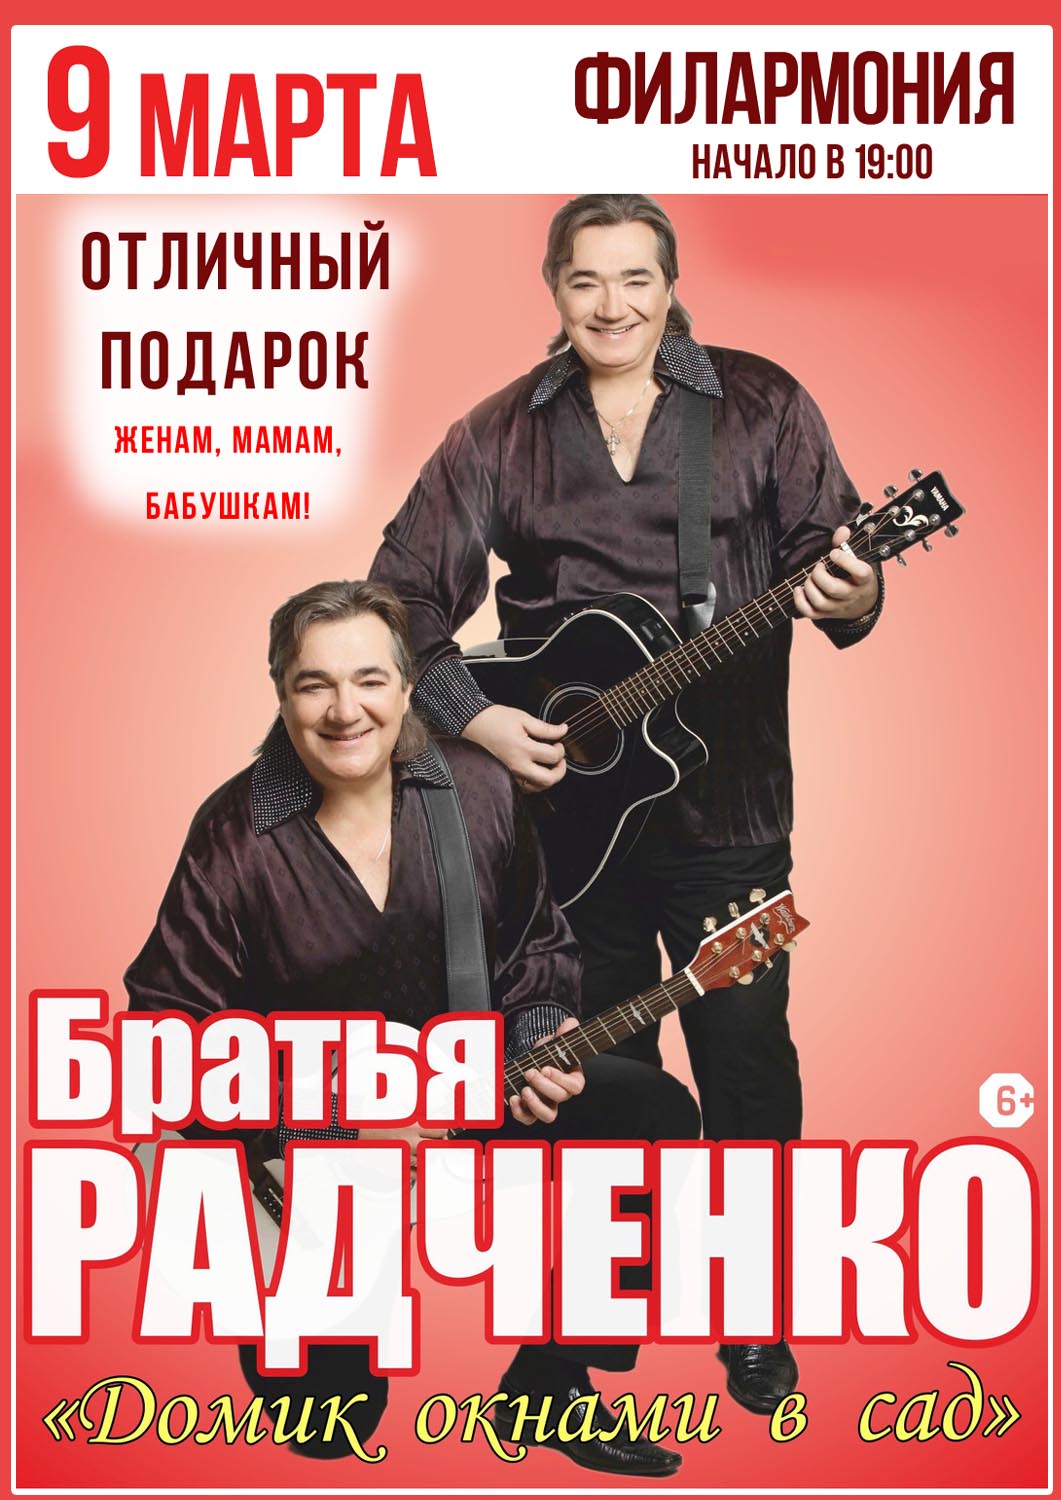 9 марта Праздничный концерт братьев Радченко